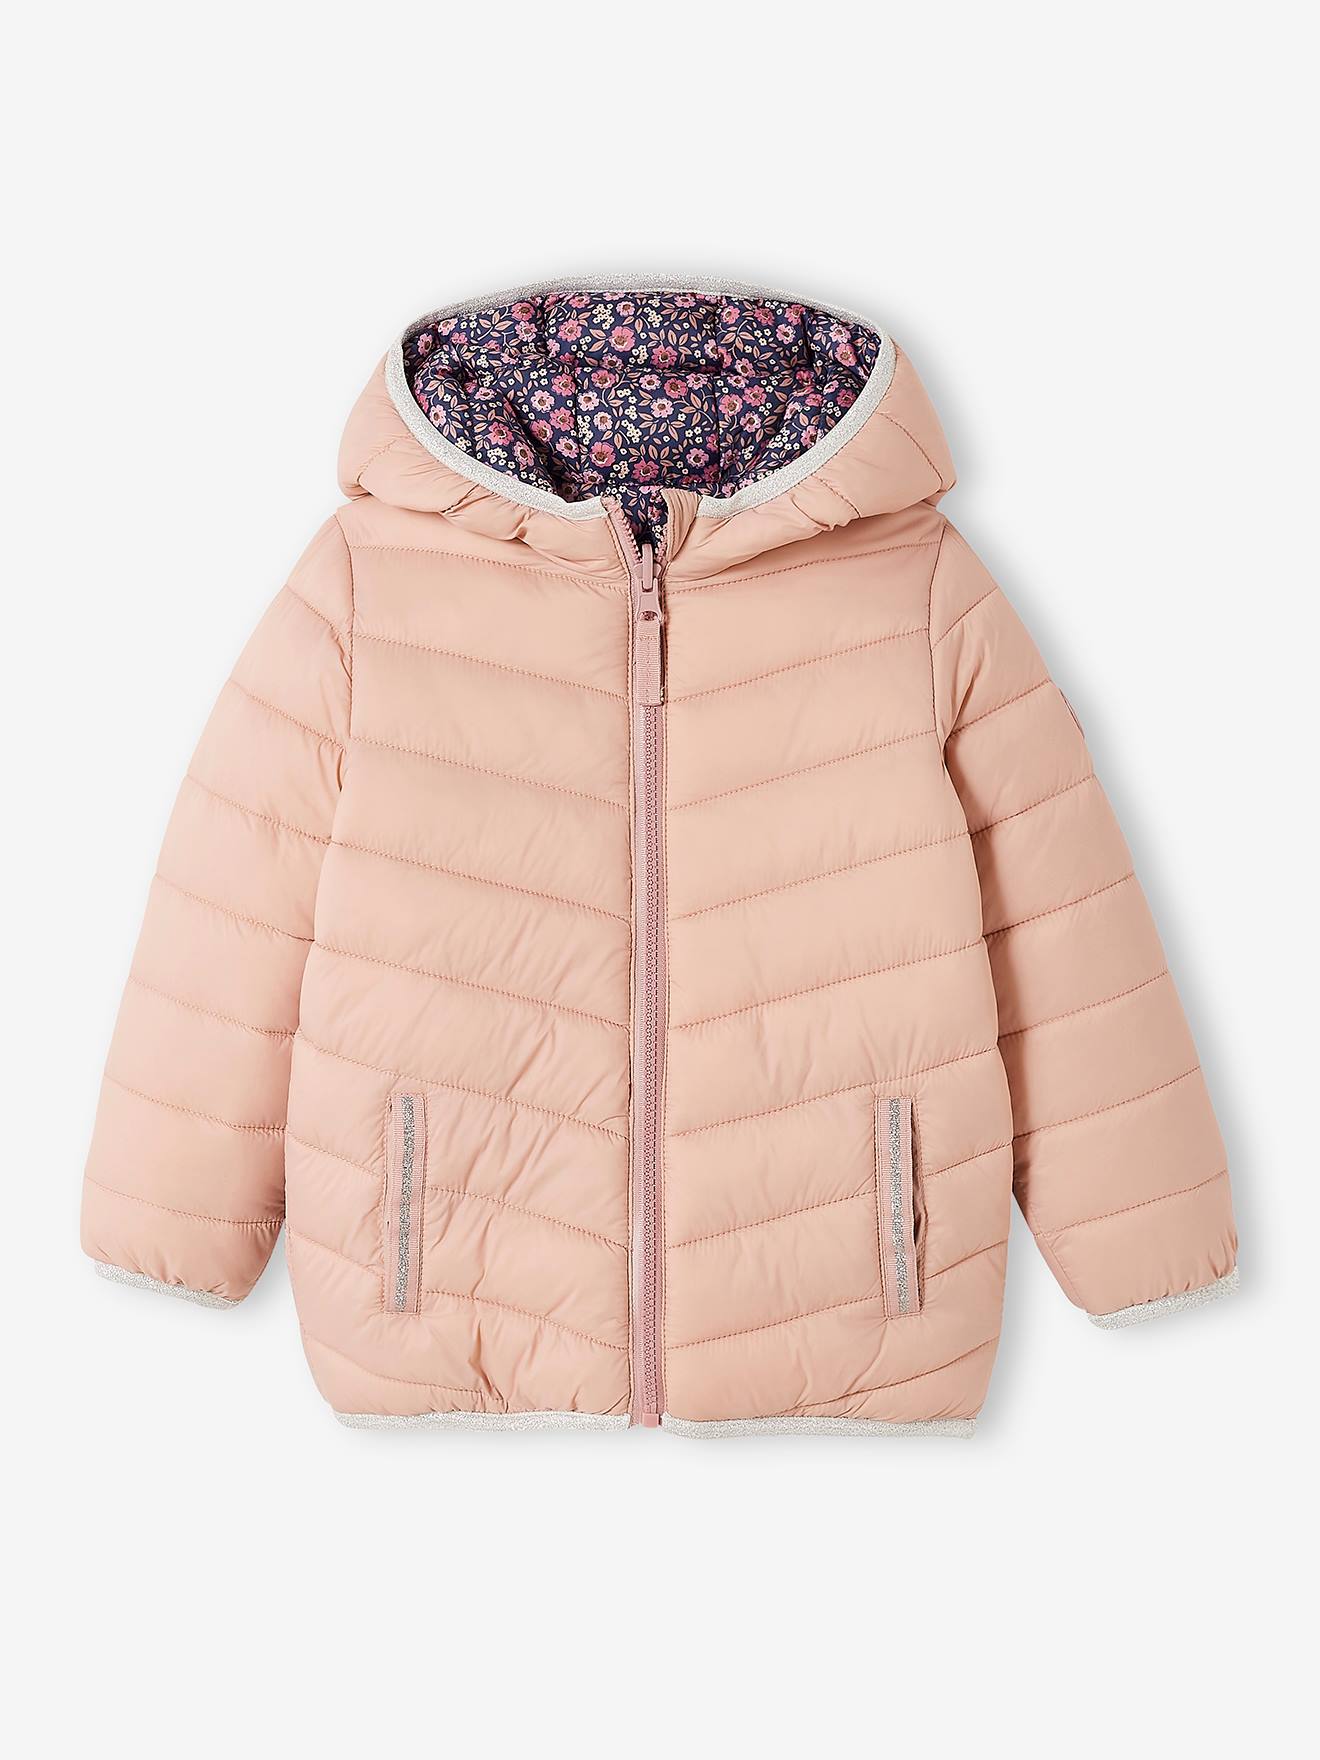 Ropa Ropa para niña Chaquetas y abrigos Jottum chica chaqueta rosa pálido tamaño 3 años 